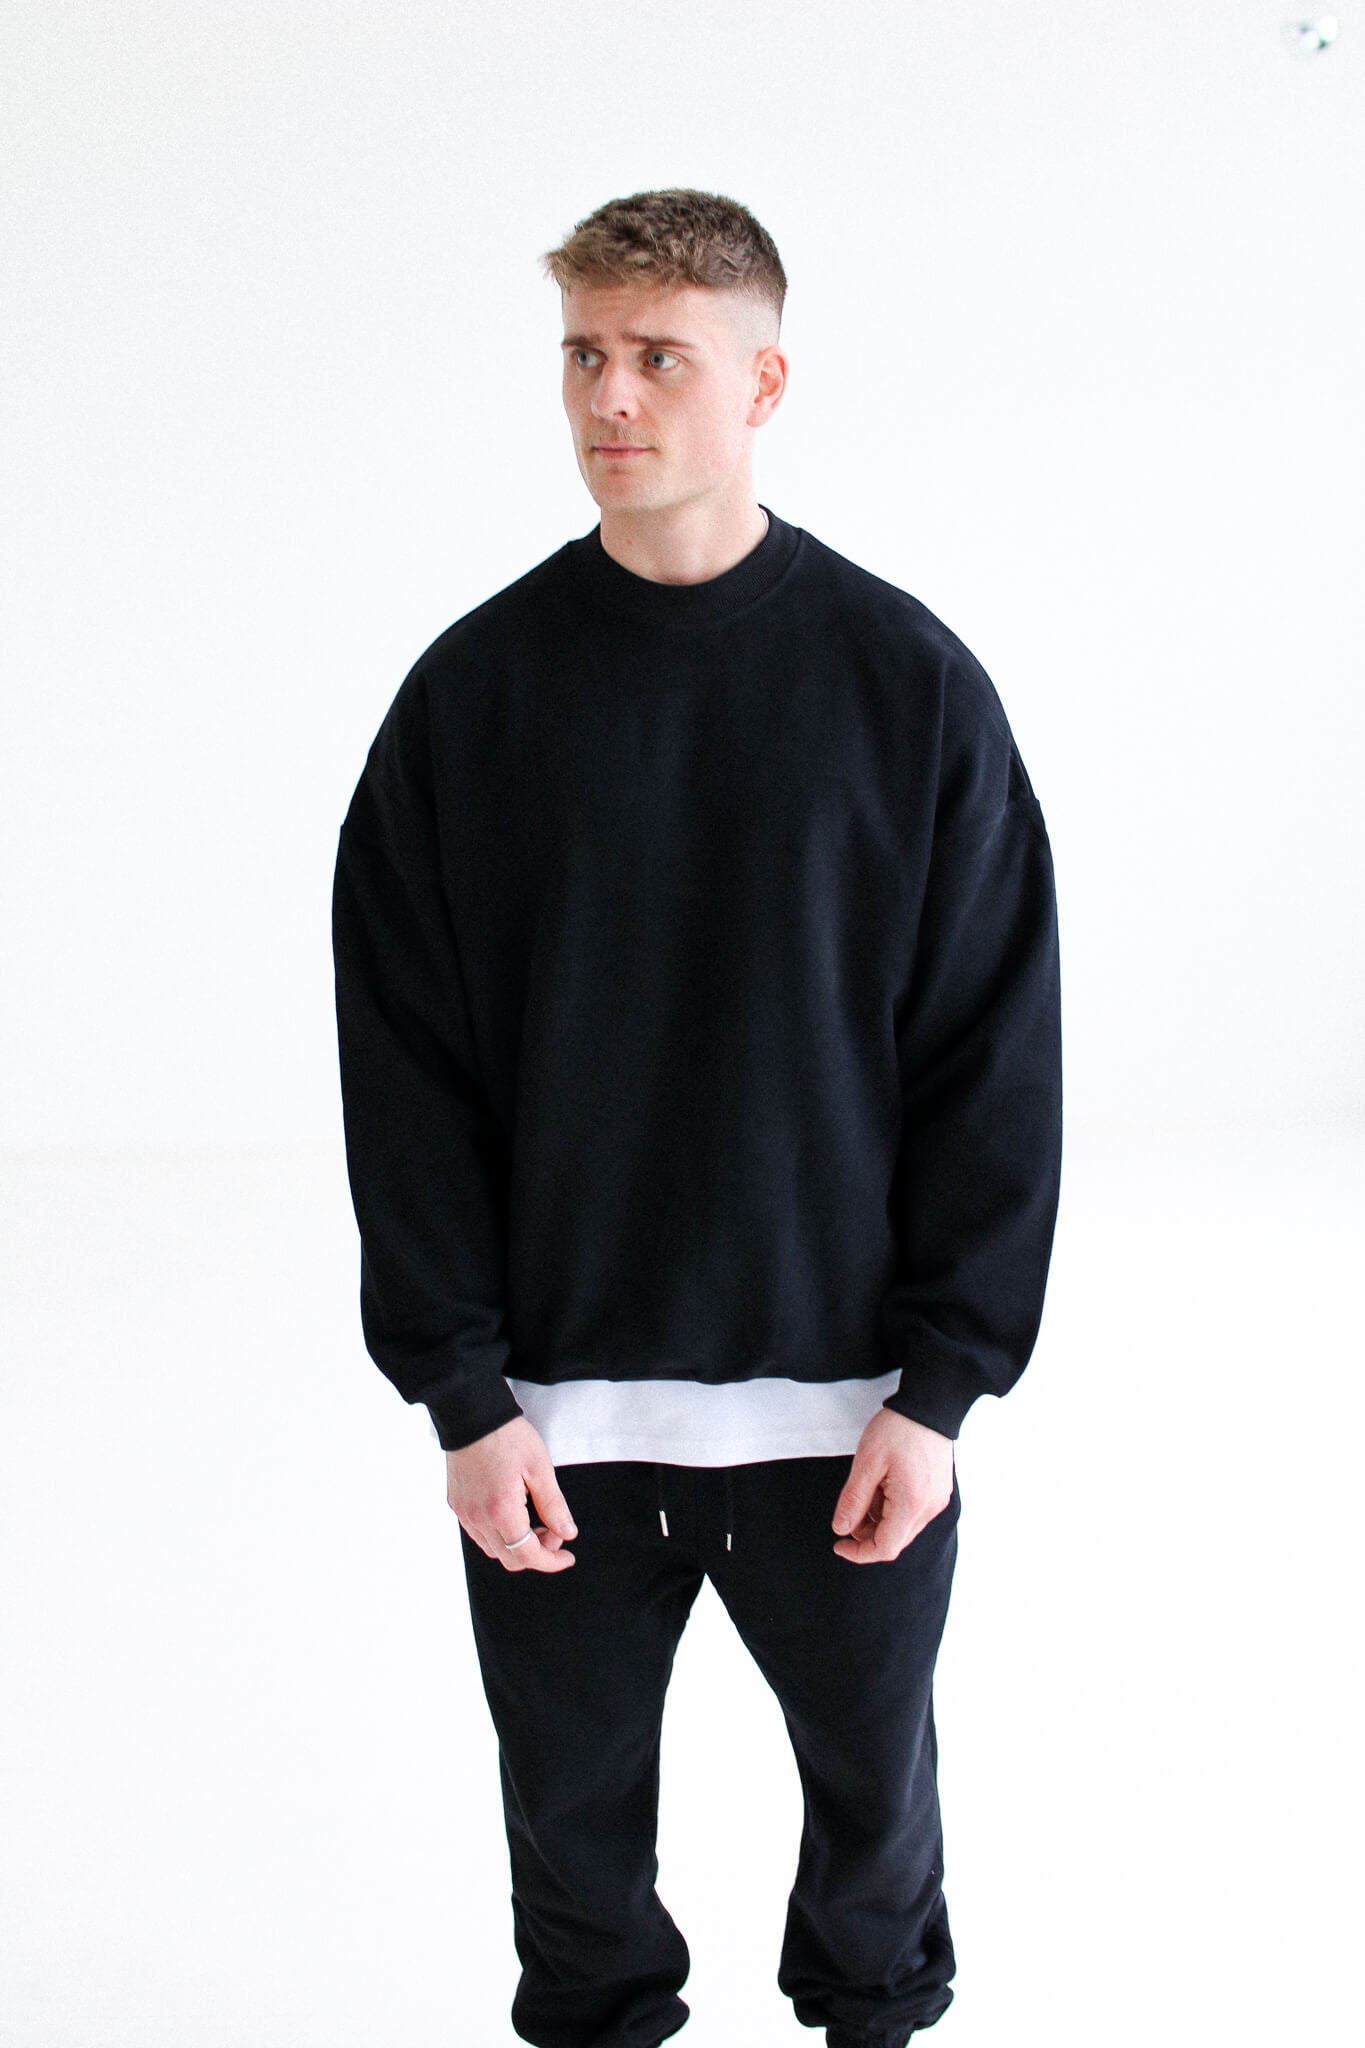 Luxury Oversized Sweatshirt - Black